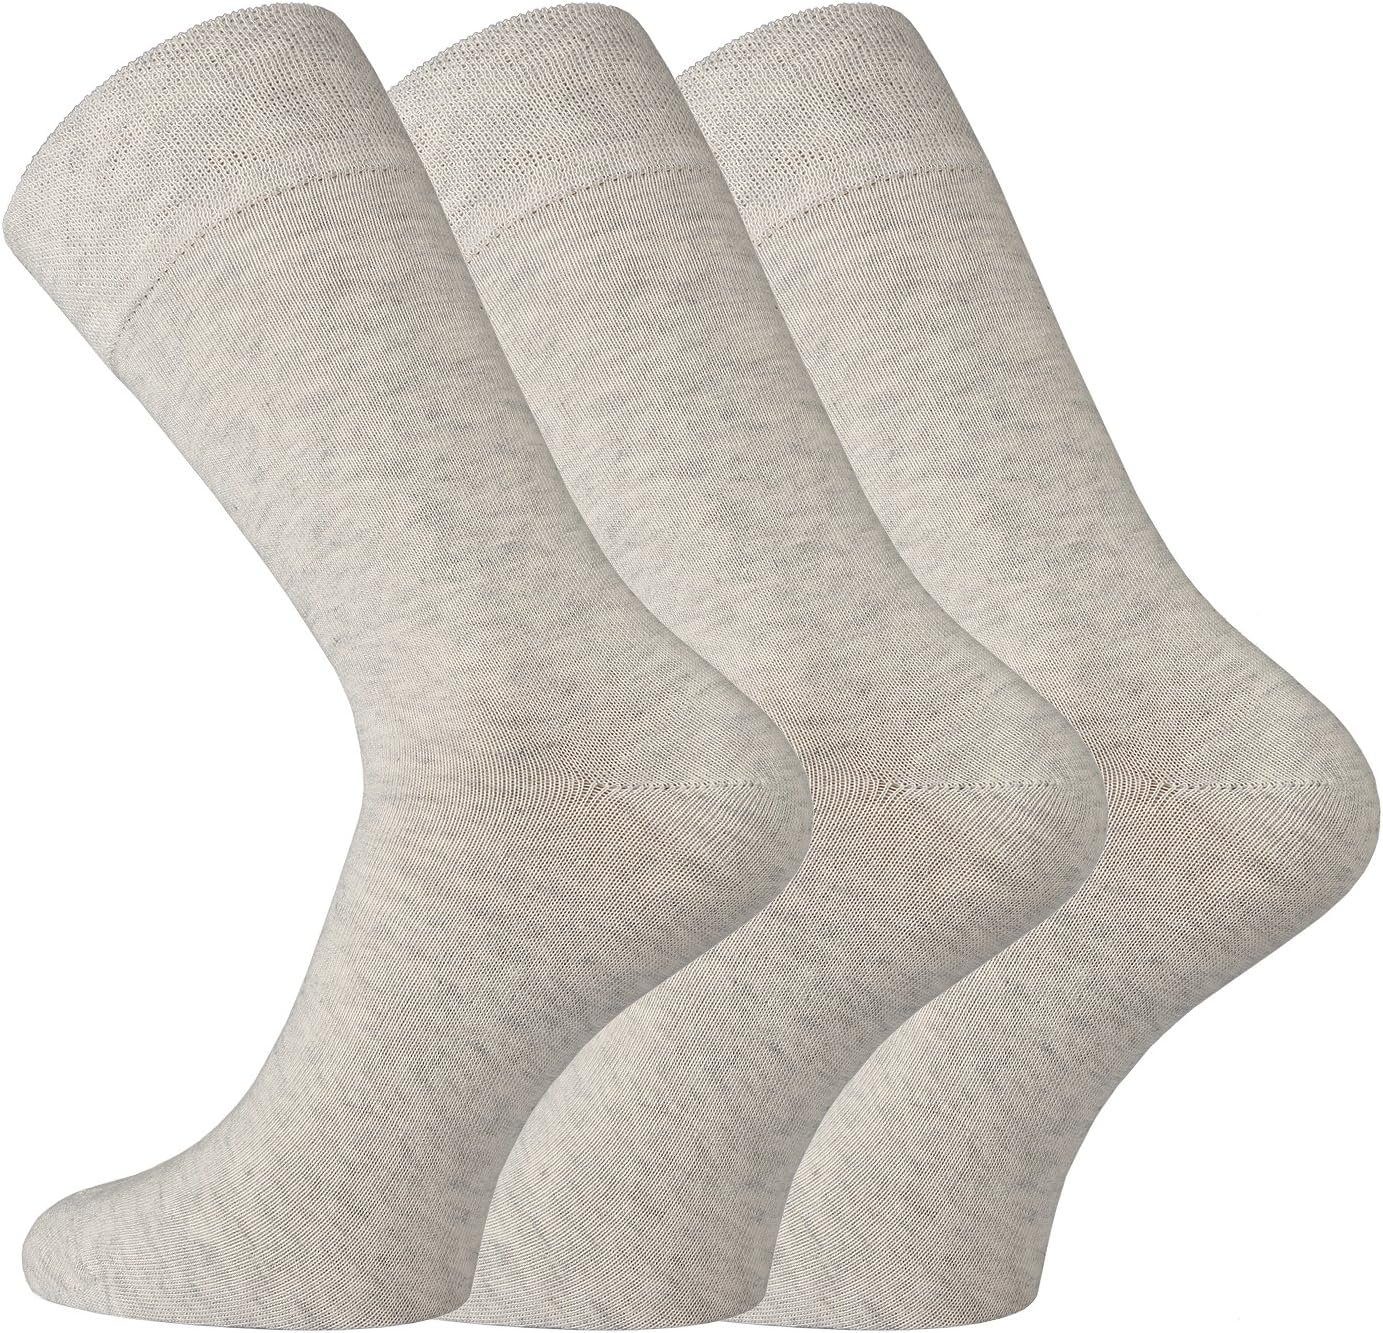 TippTexx 24 Socken 6 Paar Wellness-Socken aus Bio-Baumwolle mit Anti-Loch-Garantie Natur